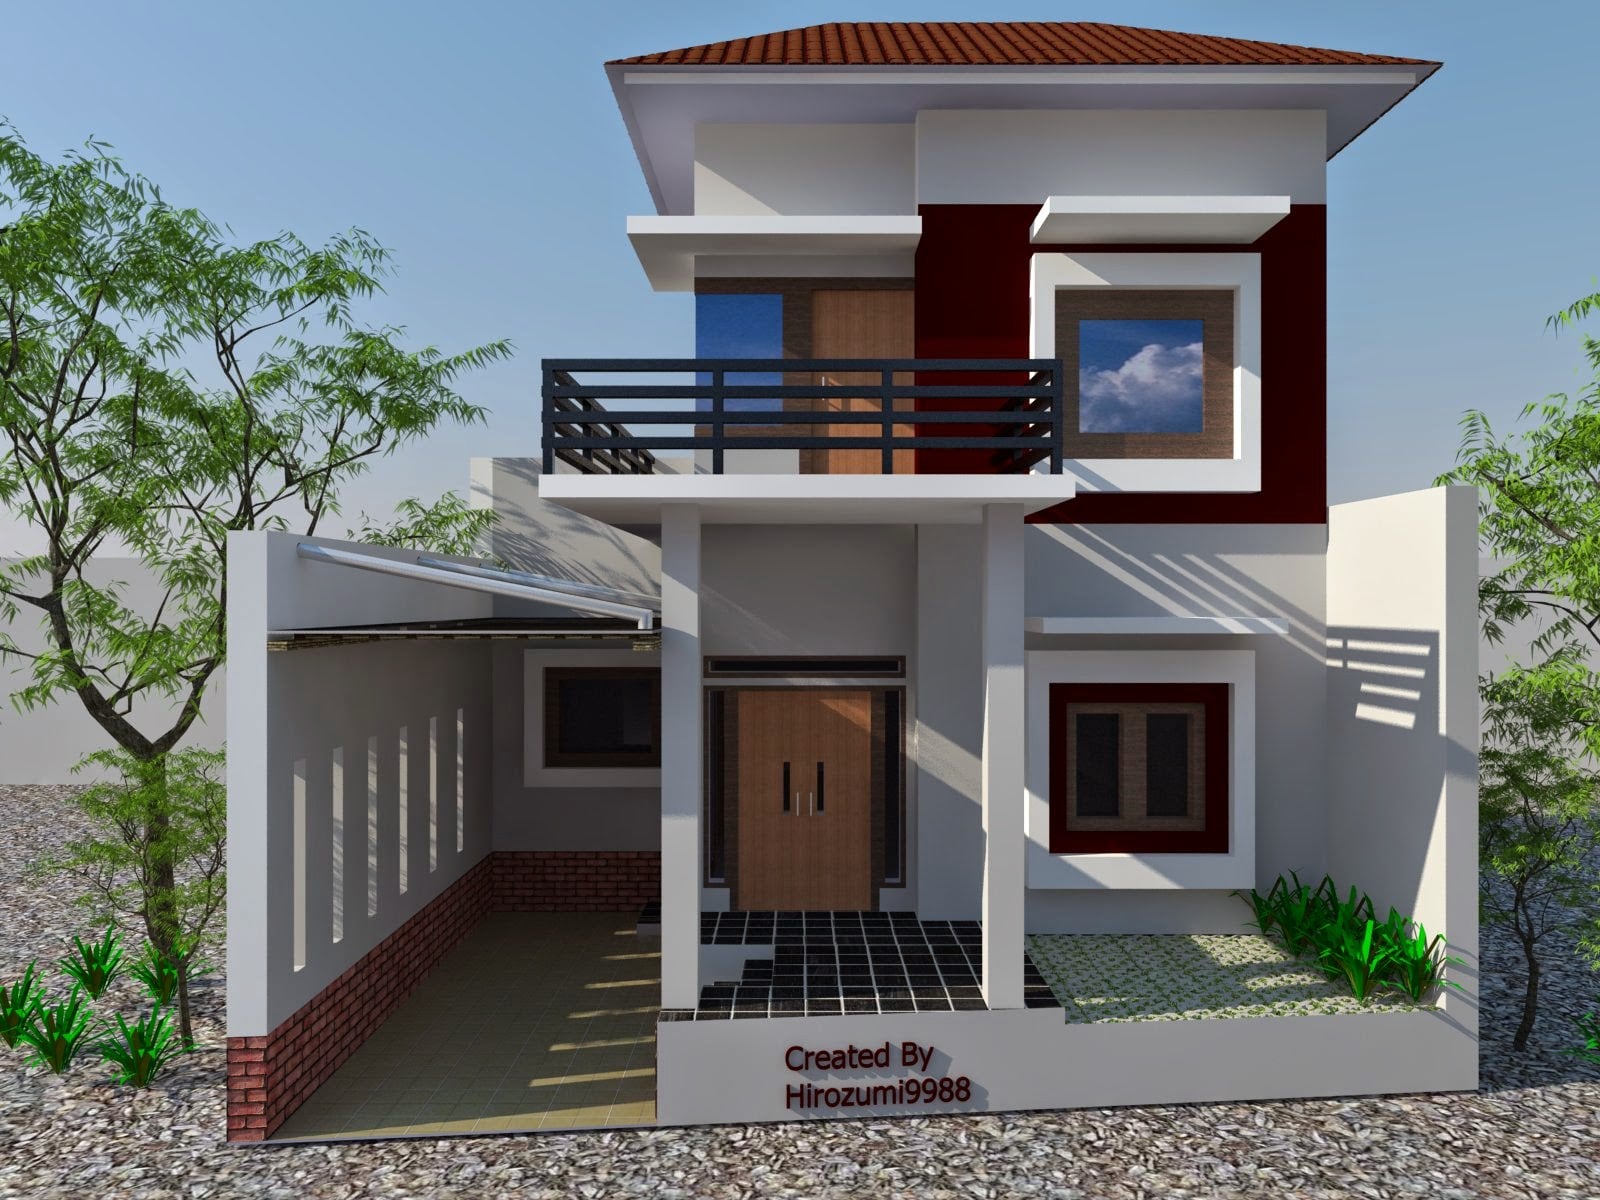 Spektakuler Desain Rumah Minimalis Dua Lantai 98 Di Perancangan Ide Dekorasi Rumah oleh Desain Rumah Minimalis Dua Lantai